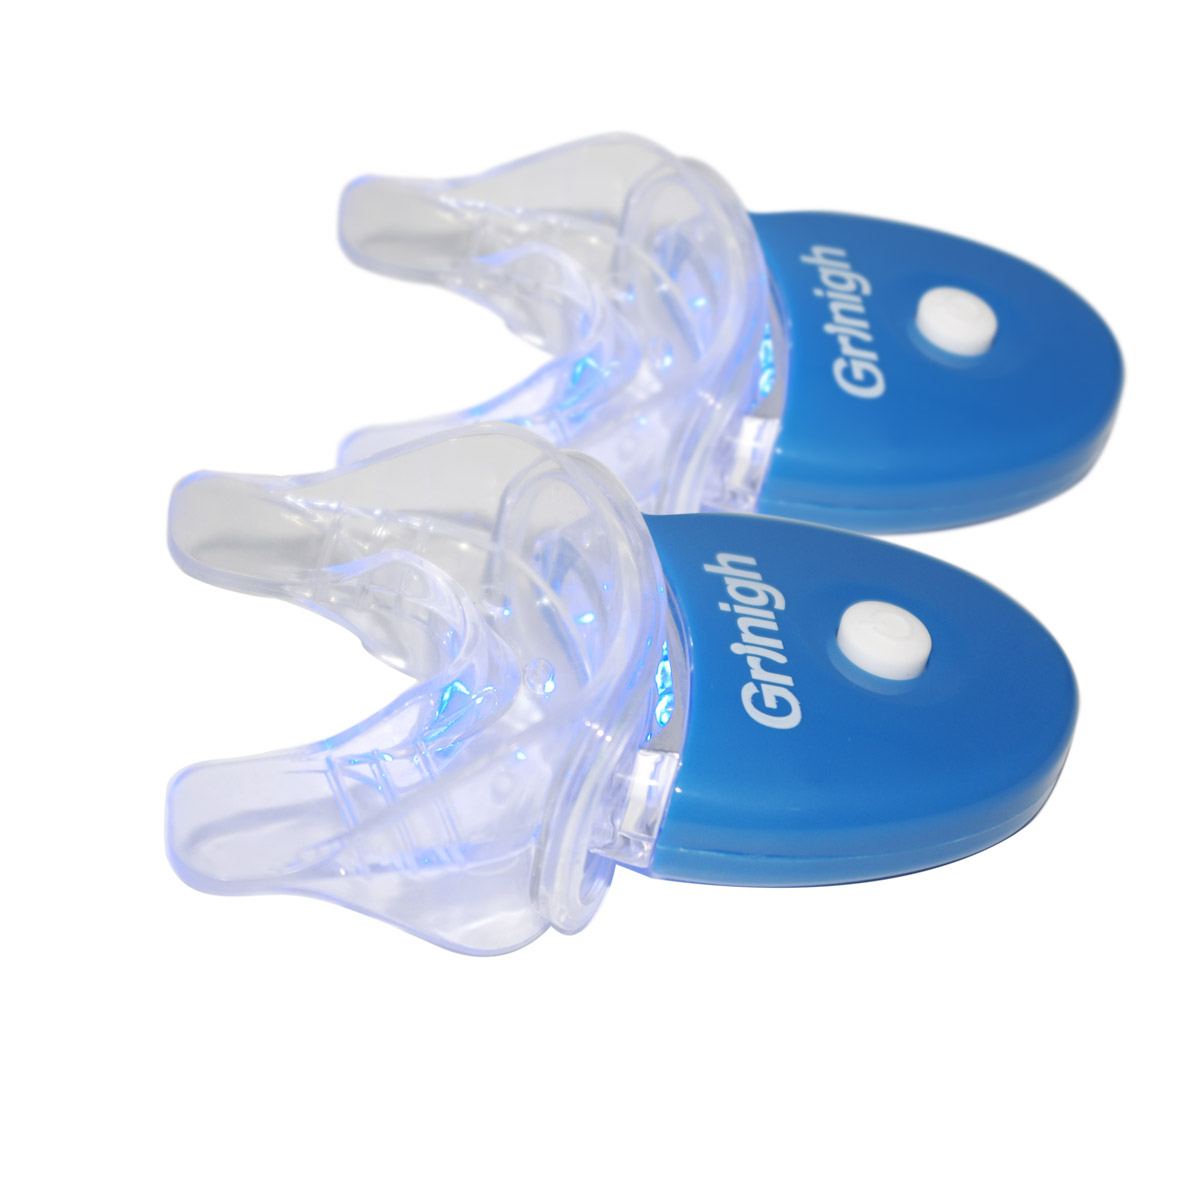 Grin365 2 Establece Mini Dental LED de luz blanca y la bandeja de la boca emparejada para los dientes caseros que blanquean el sistema CE aprobado